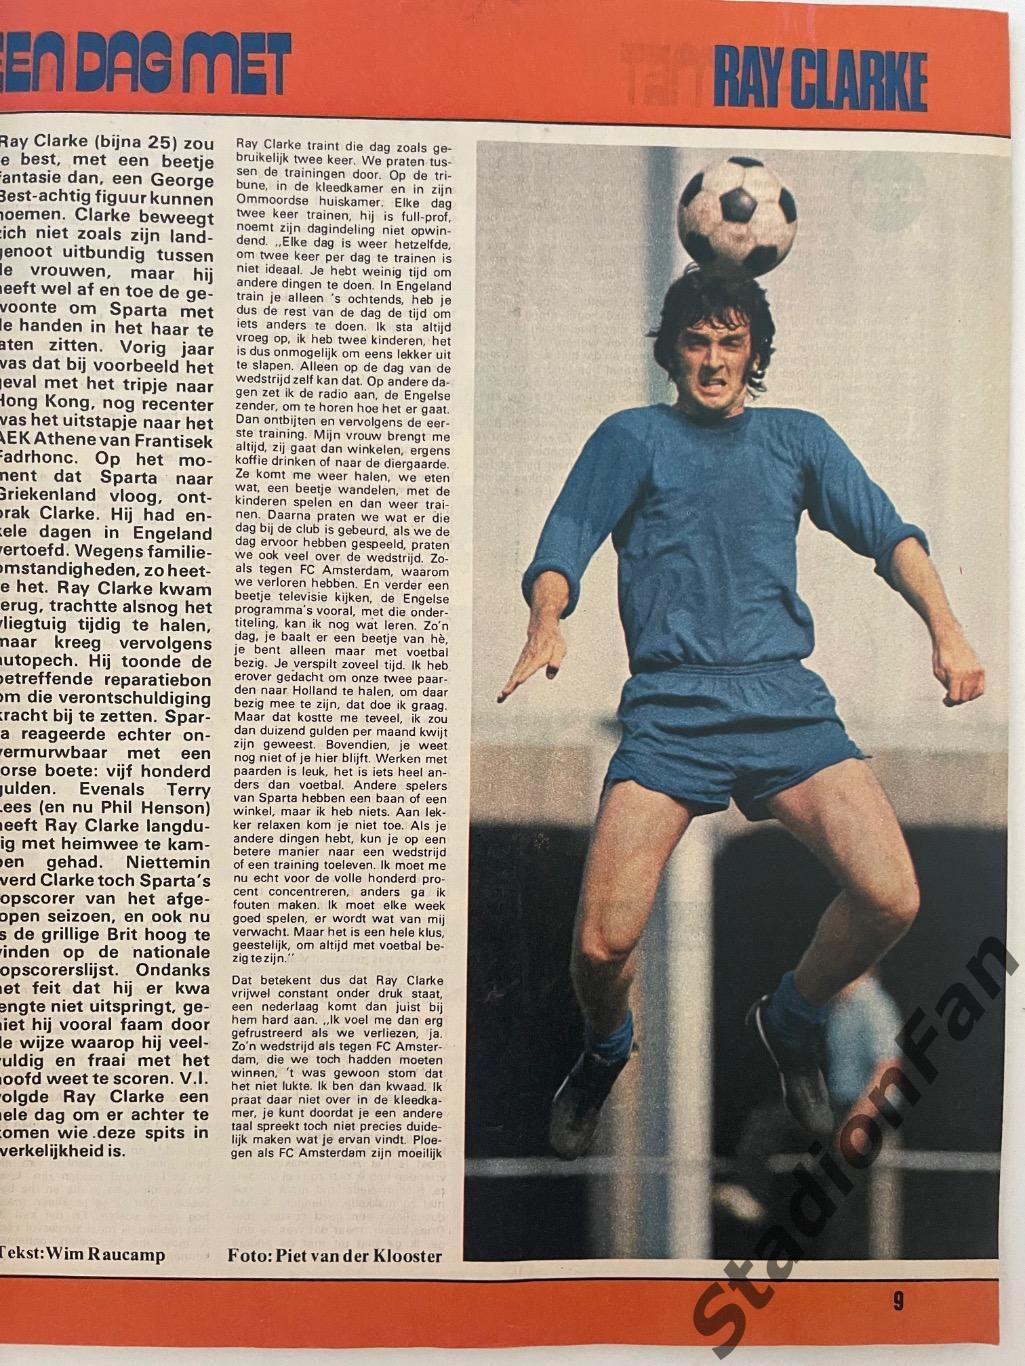 Журнал Voetbal nr.38 - 1977 год. 1